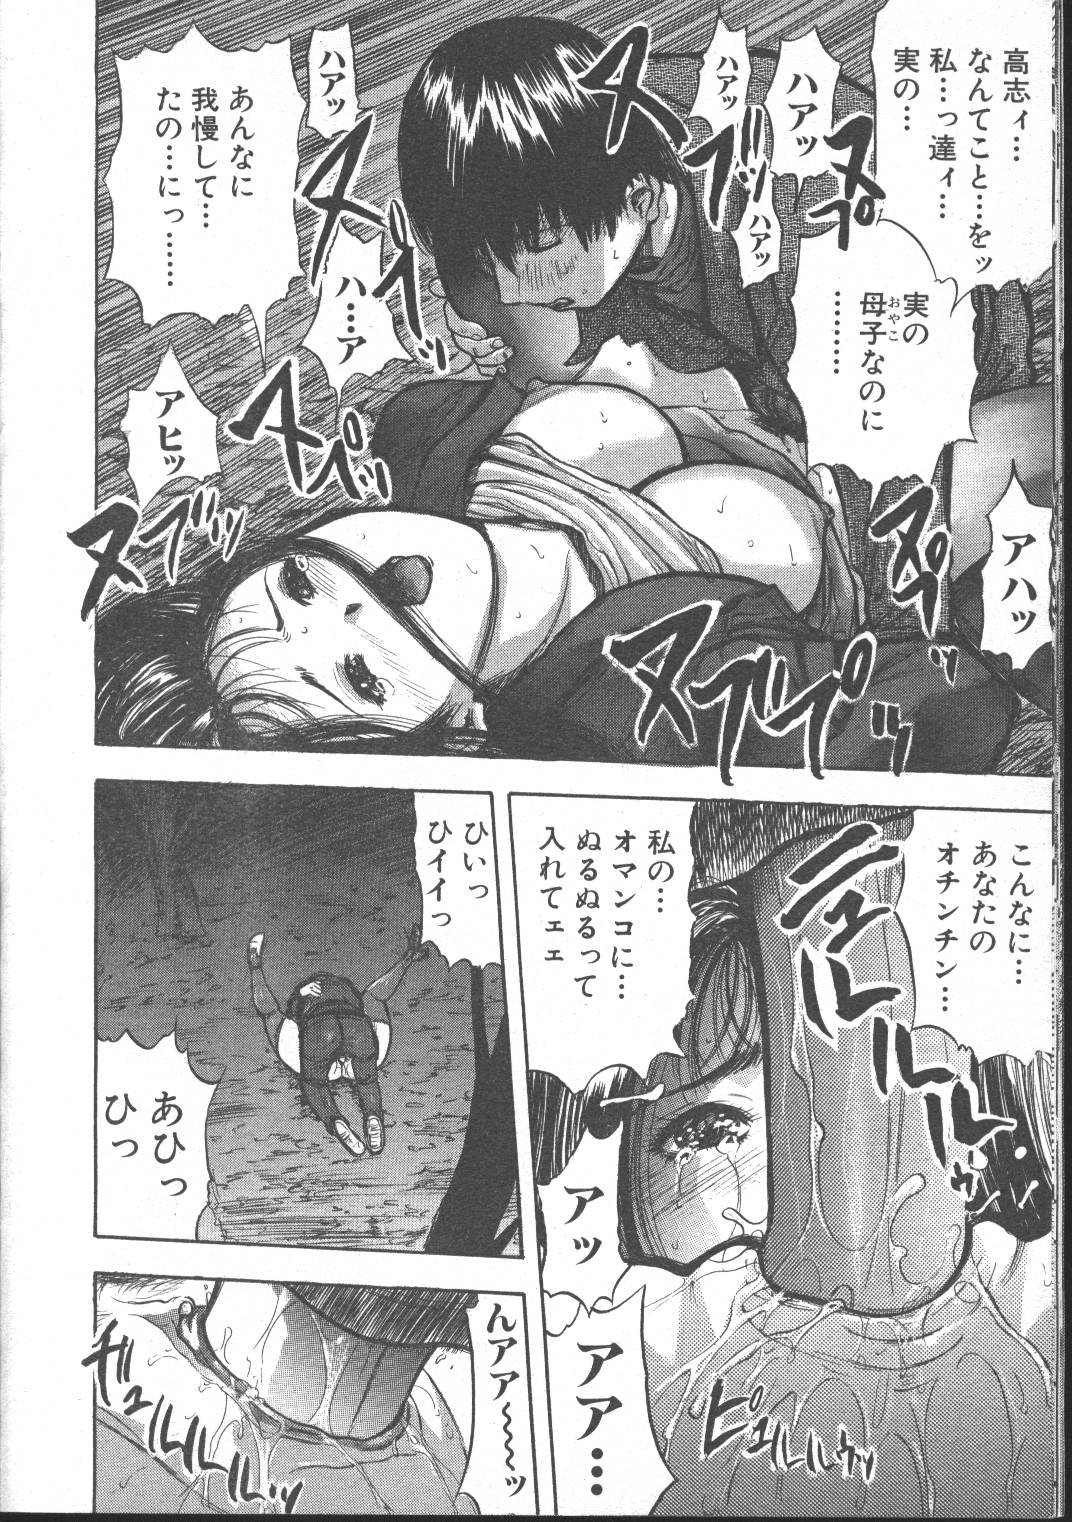 Comic Mujin 1999-11 page 28 full